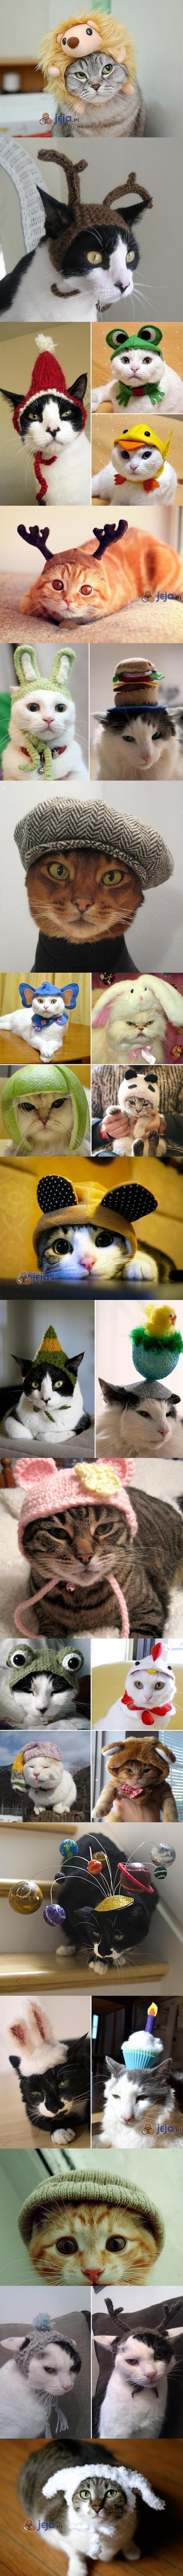 Koty w czapkach